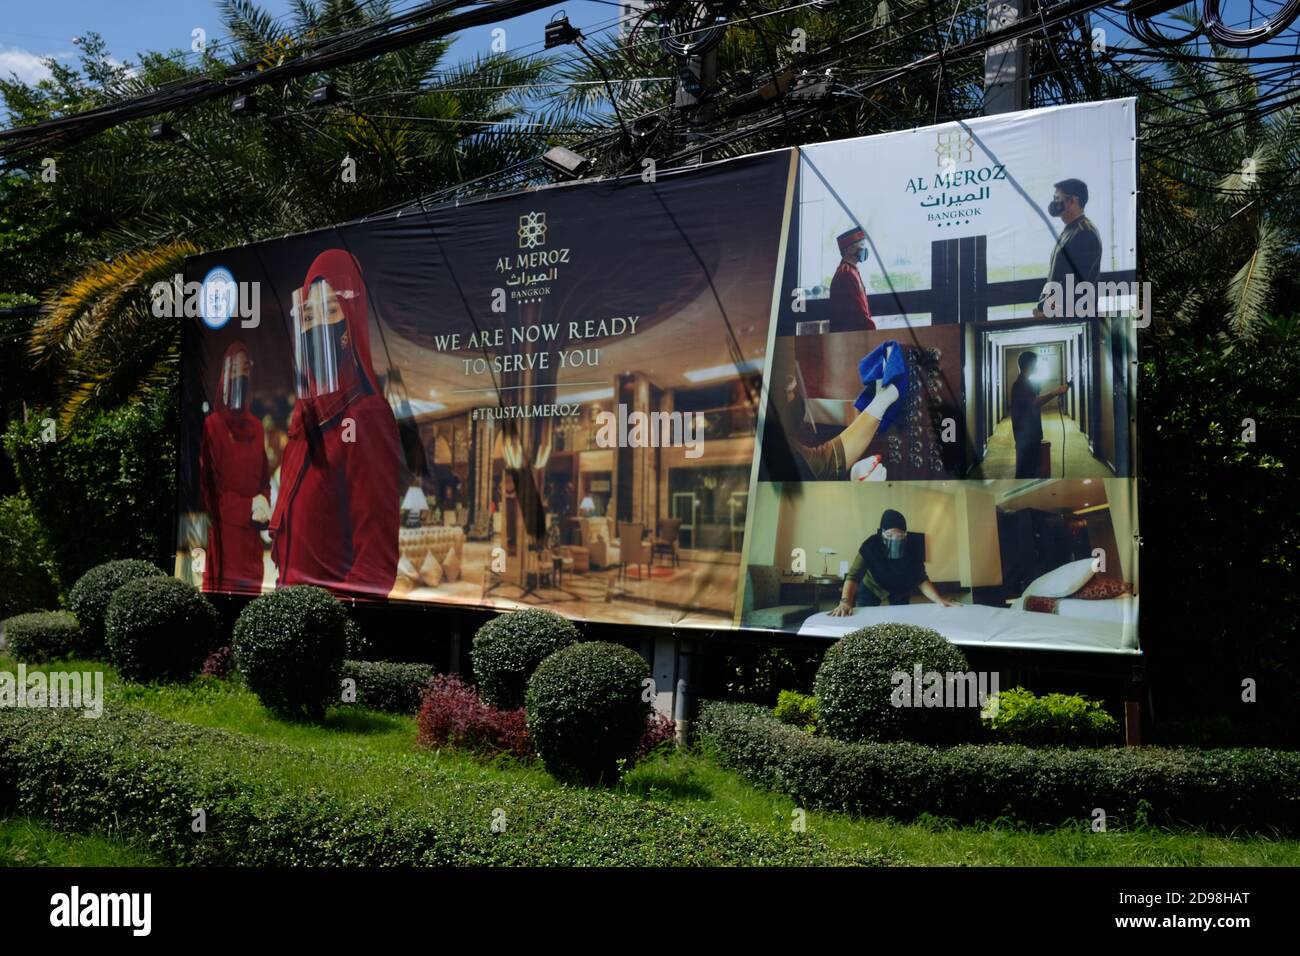 Publicité pour un hôtel, montrant les mesures prises pour rouvrir dans la pandémie de COVID, Bangkok, Thaïlande Banque D'Images